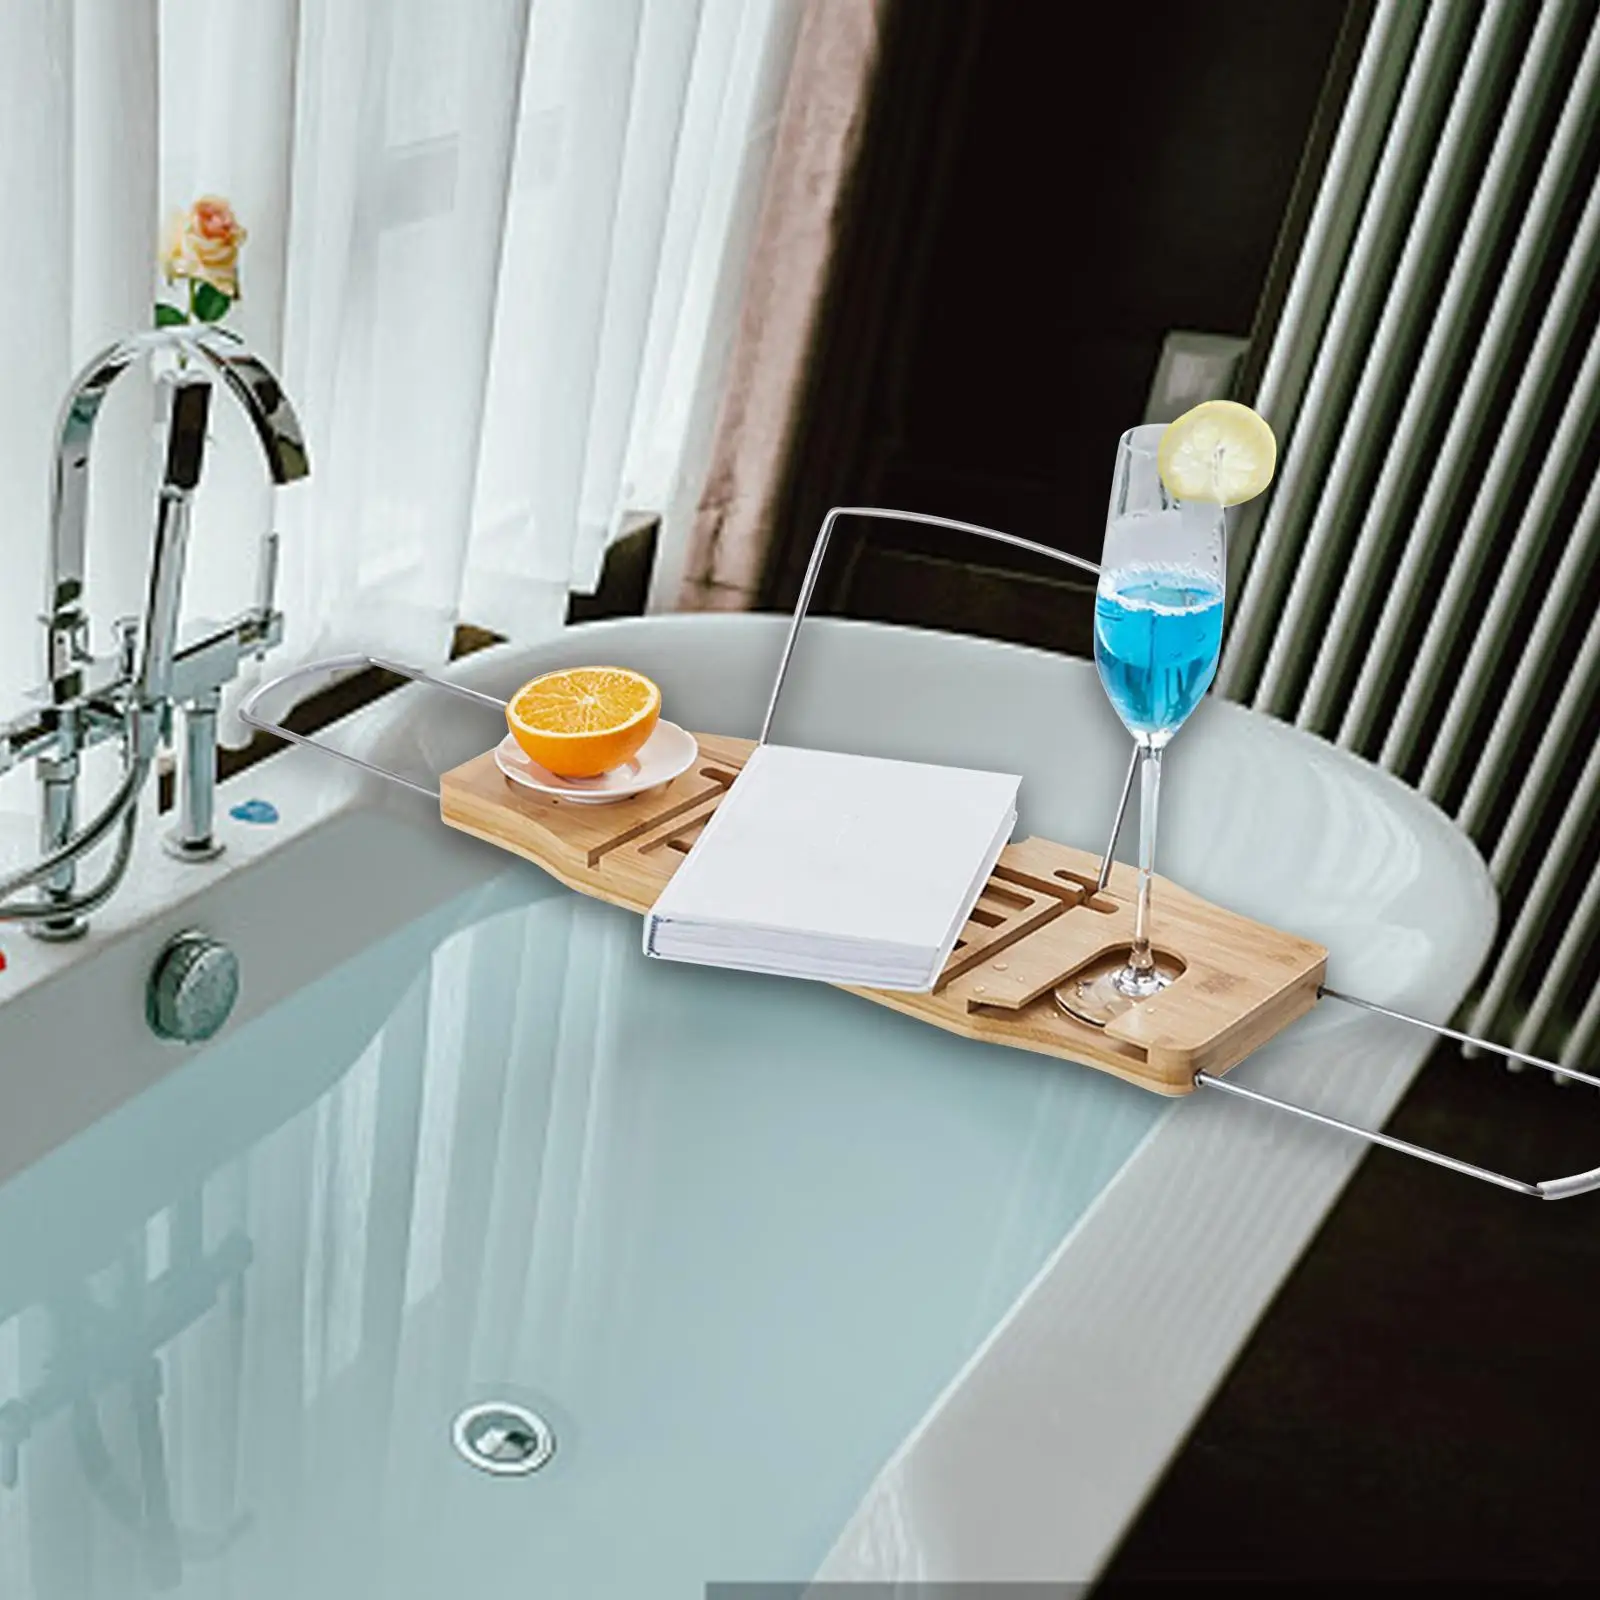 Expandable Bath Tub Caddy Luxury Bathtub Accessories Shelf Organizer for Tubs Home